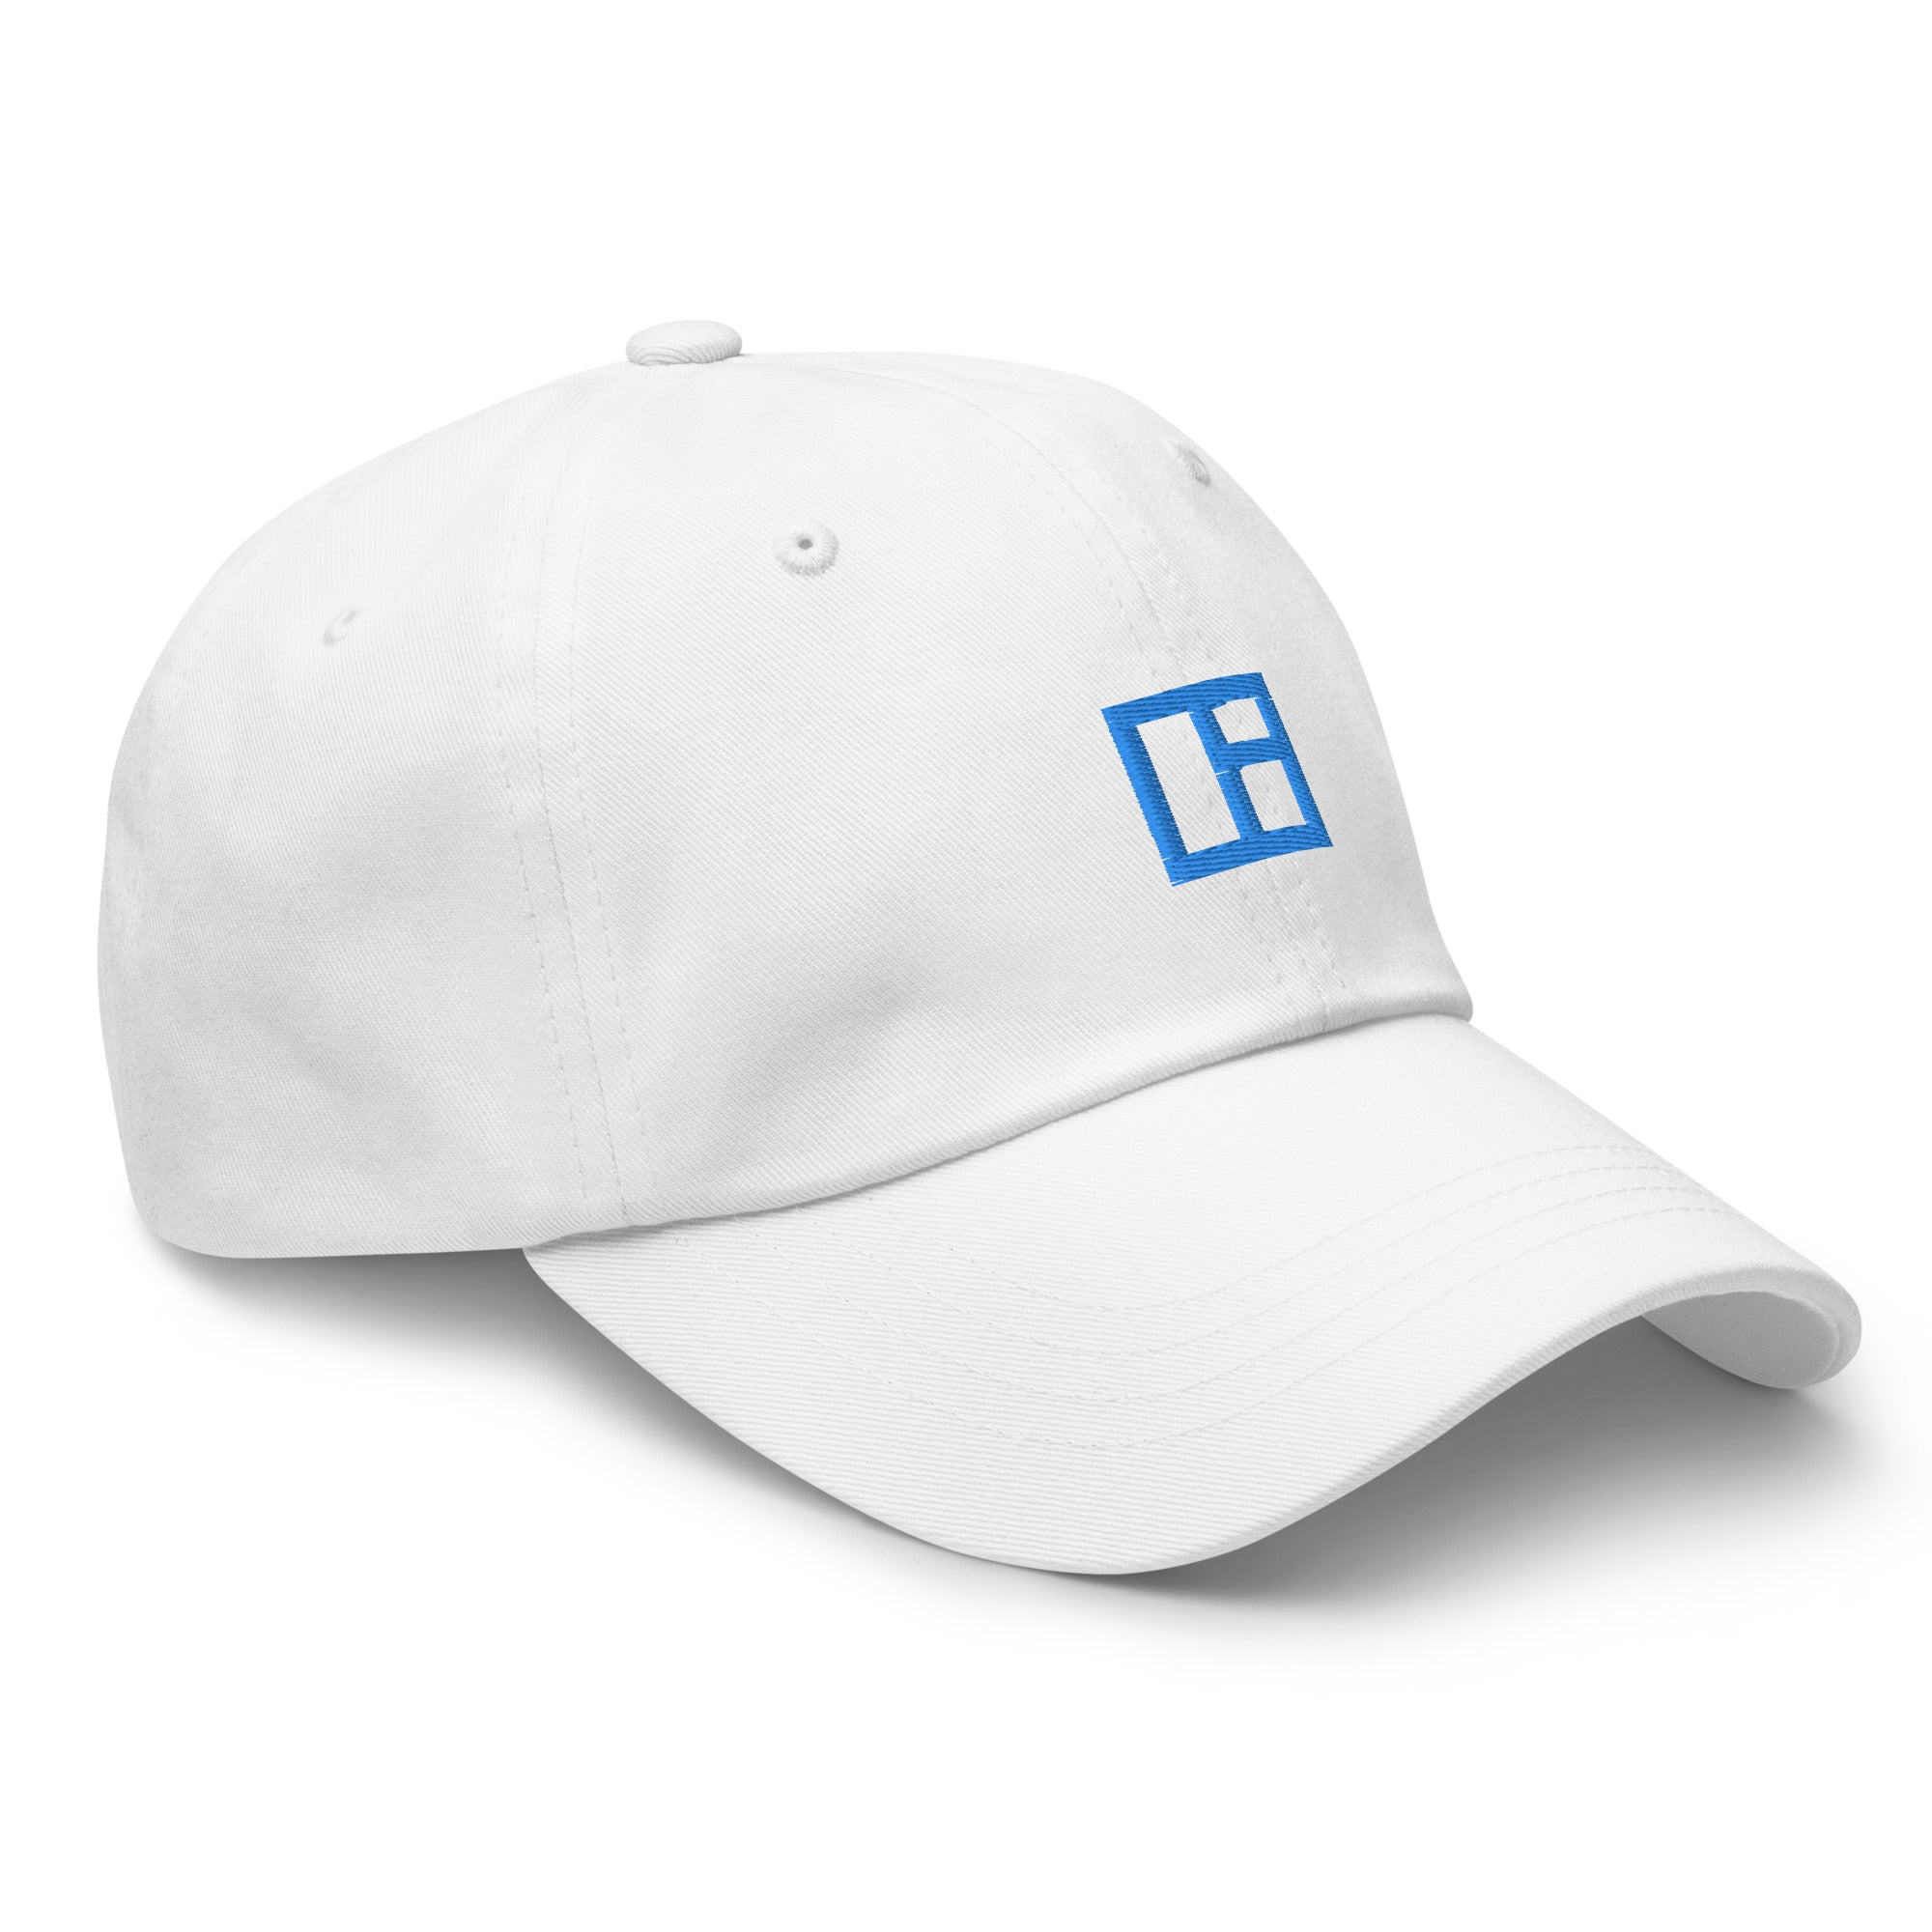 DealRoom Logo Dad Hat - White